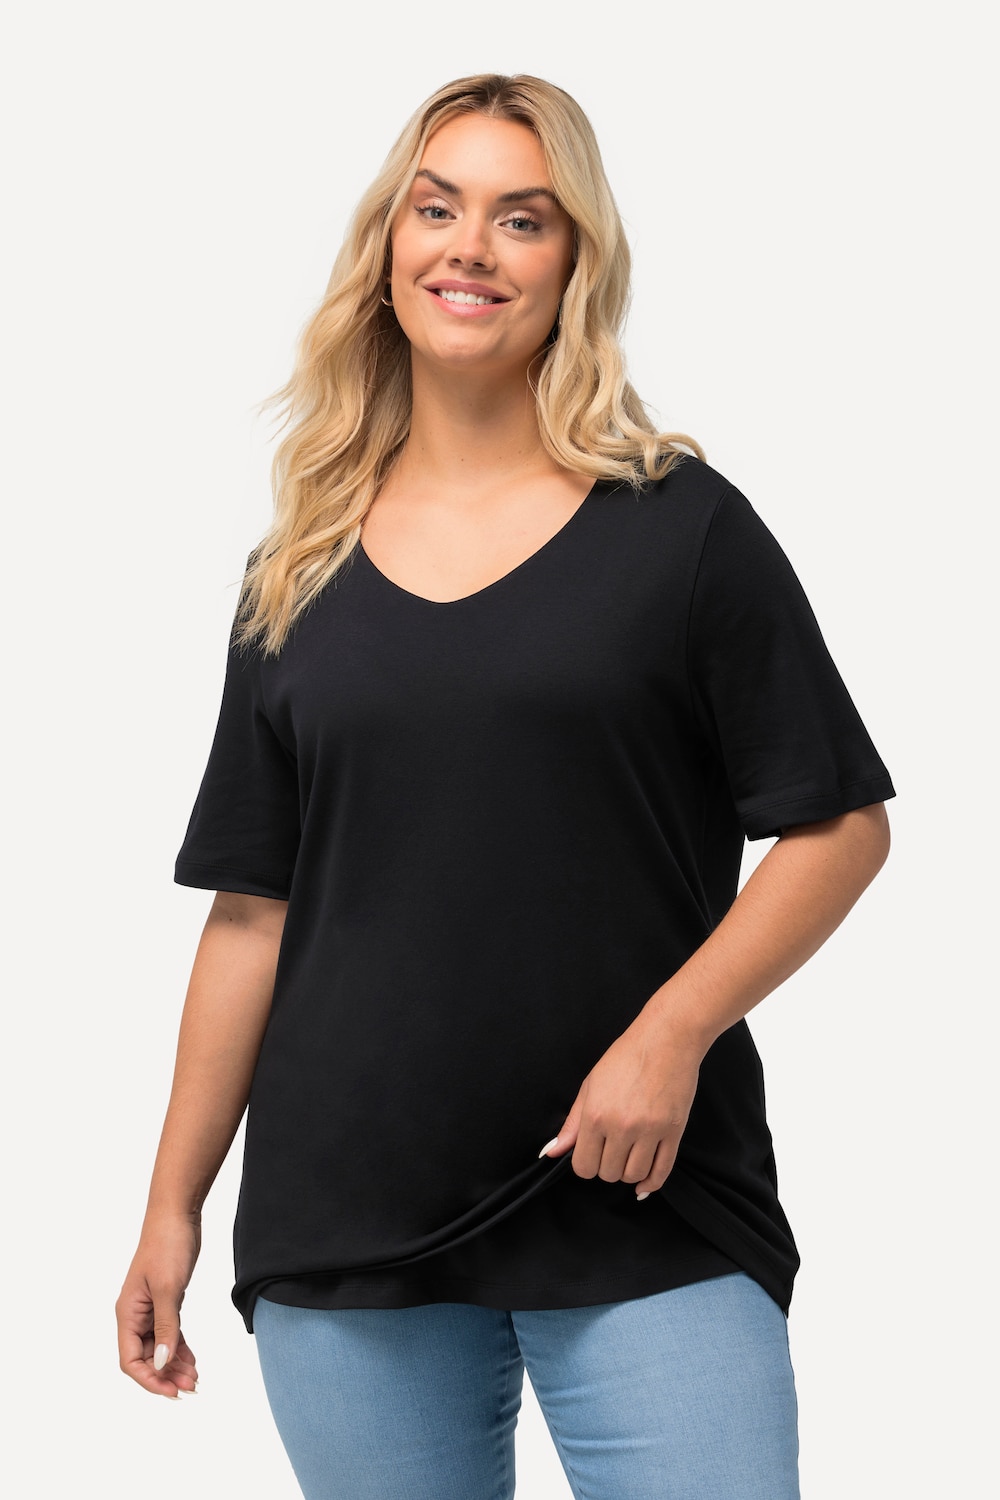 Große Größen Shirt, Damen, schwarz, Größe: 42/44, Baumwolle, Ulla Popken